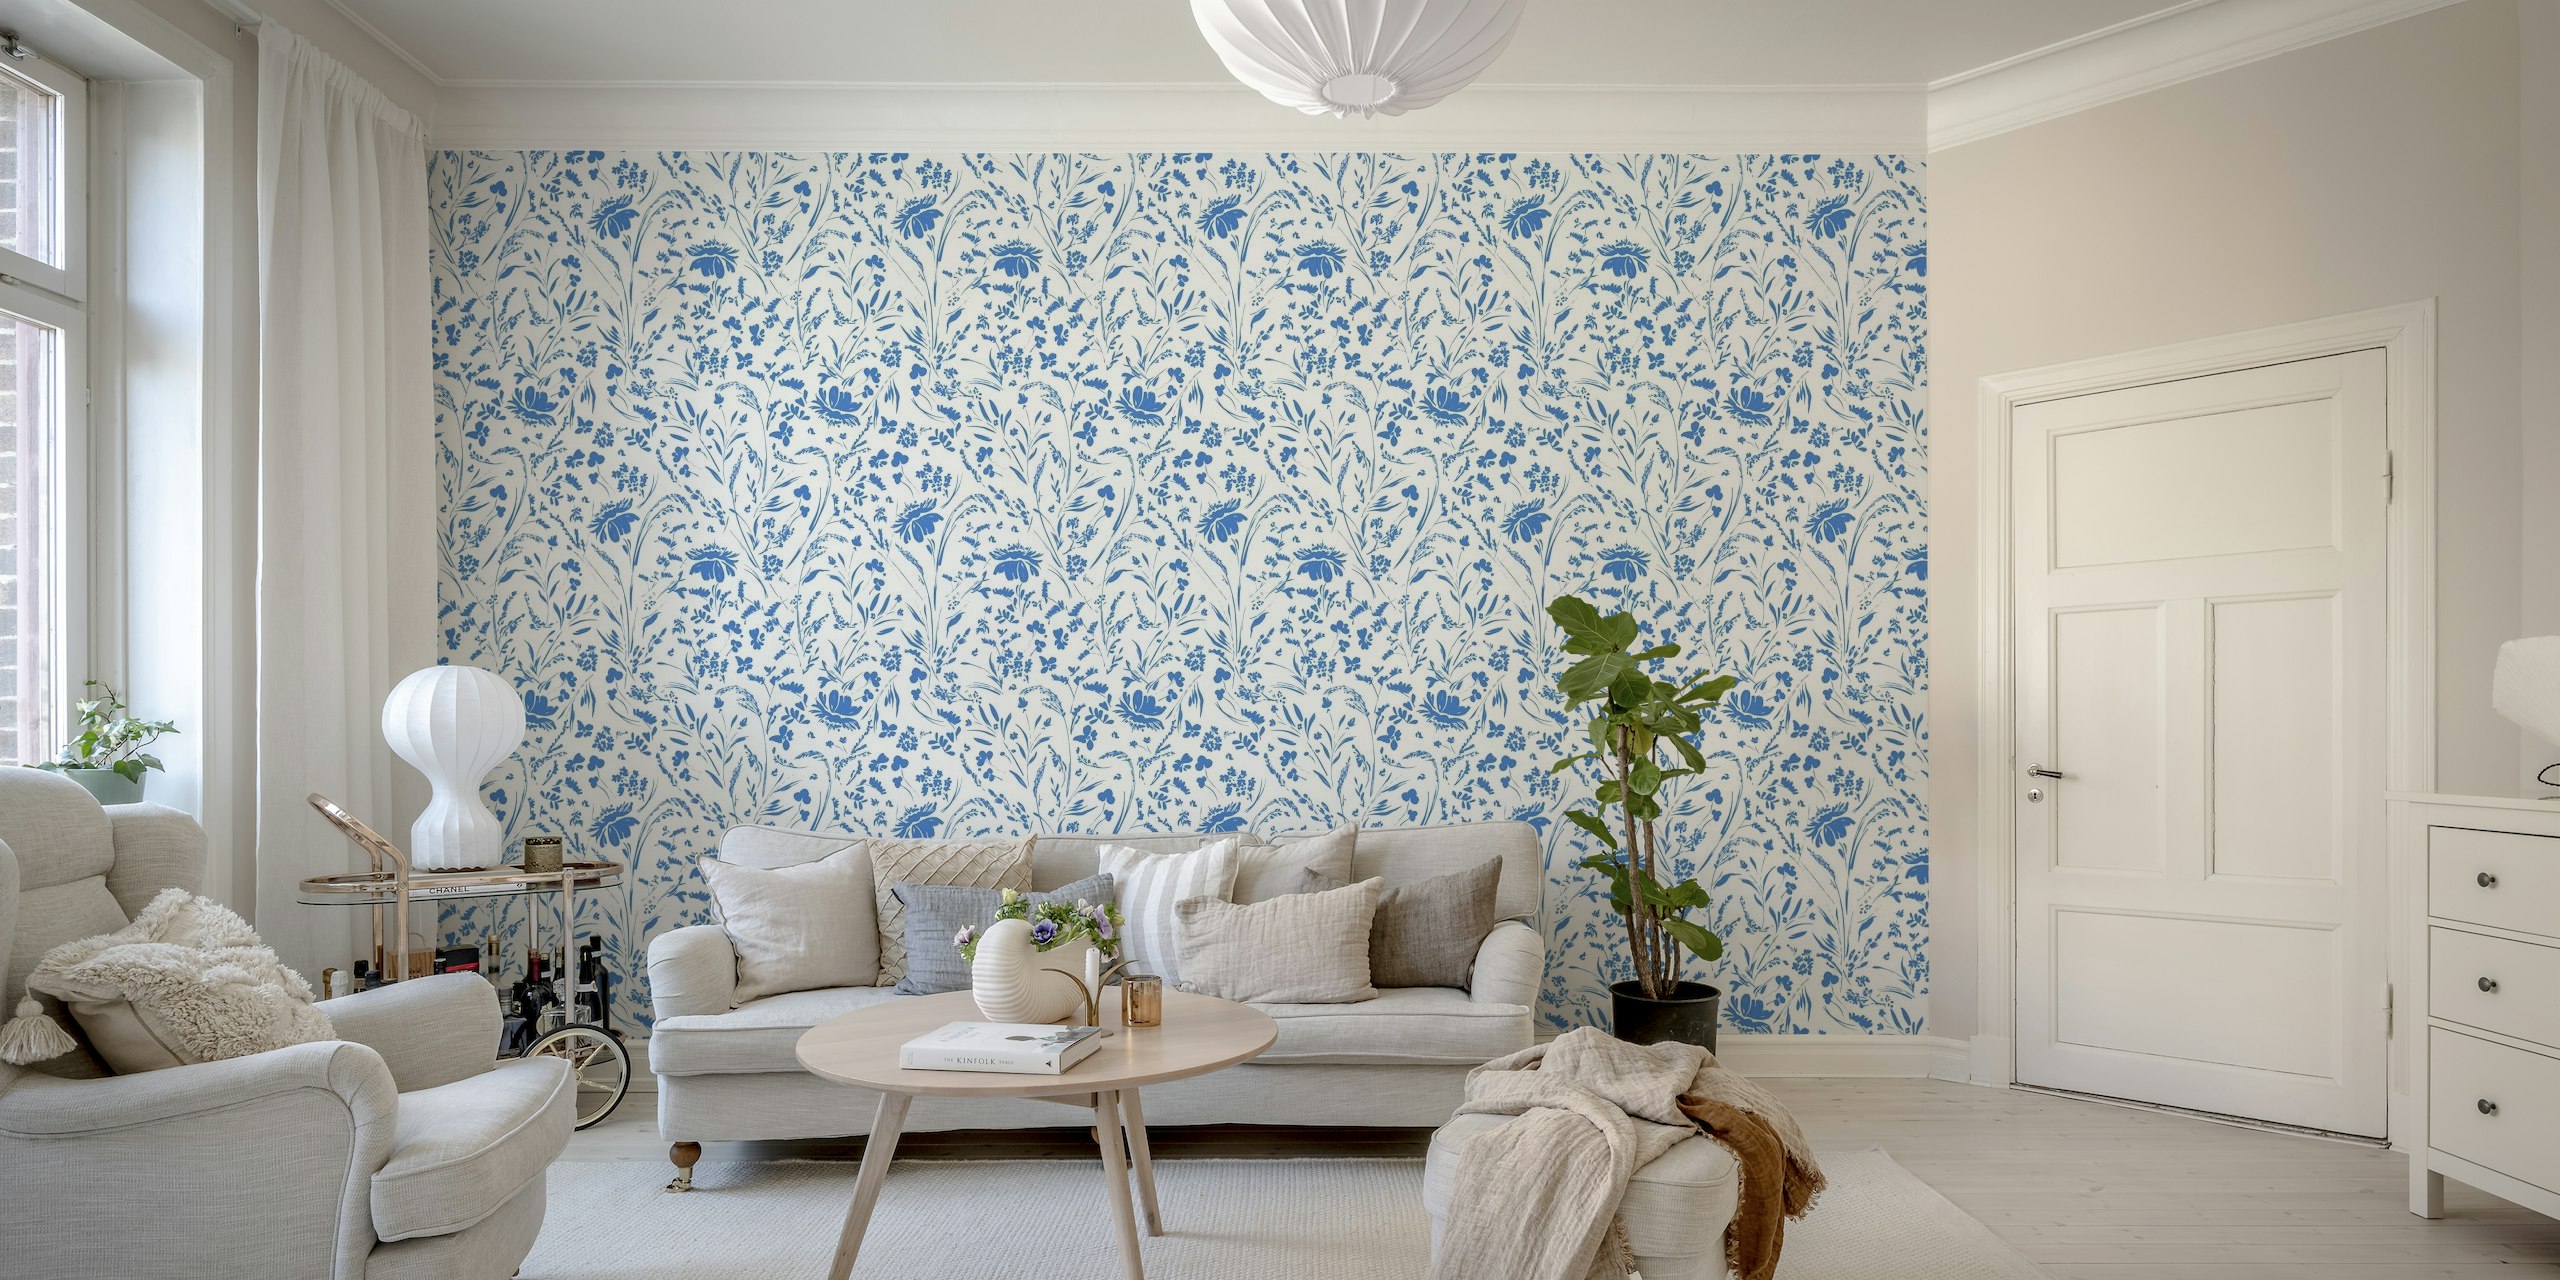 Plavo-bijeli cvjetni zidni mural s elegantnim cvjetovima i lišćem